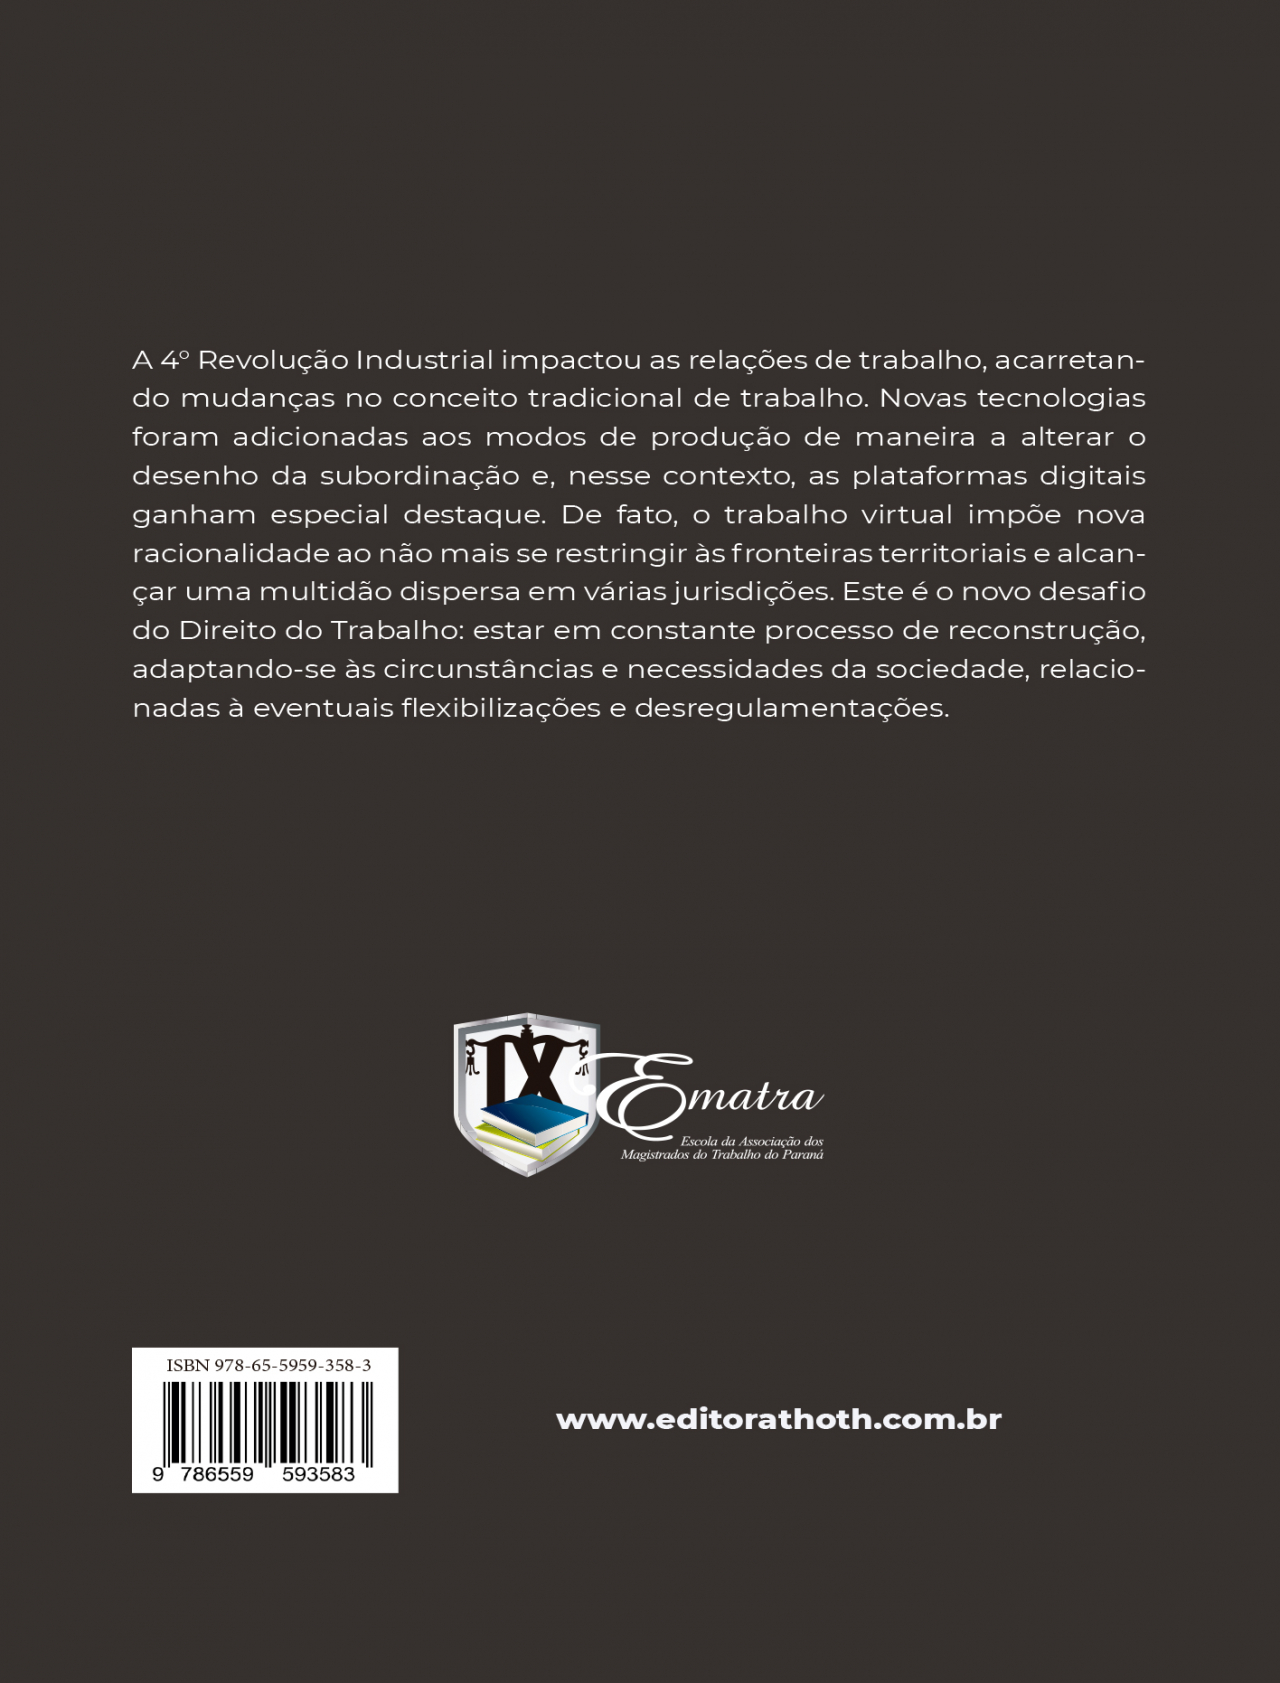 Educação comparada: panorama internacional e perspectivas; volume 1